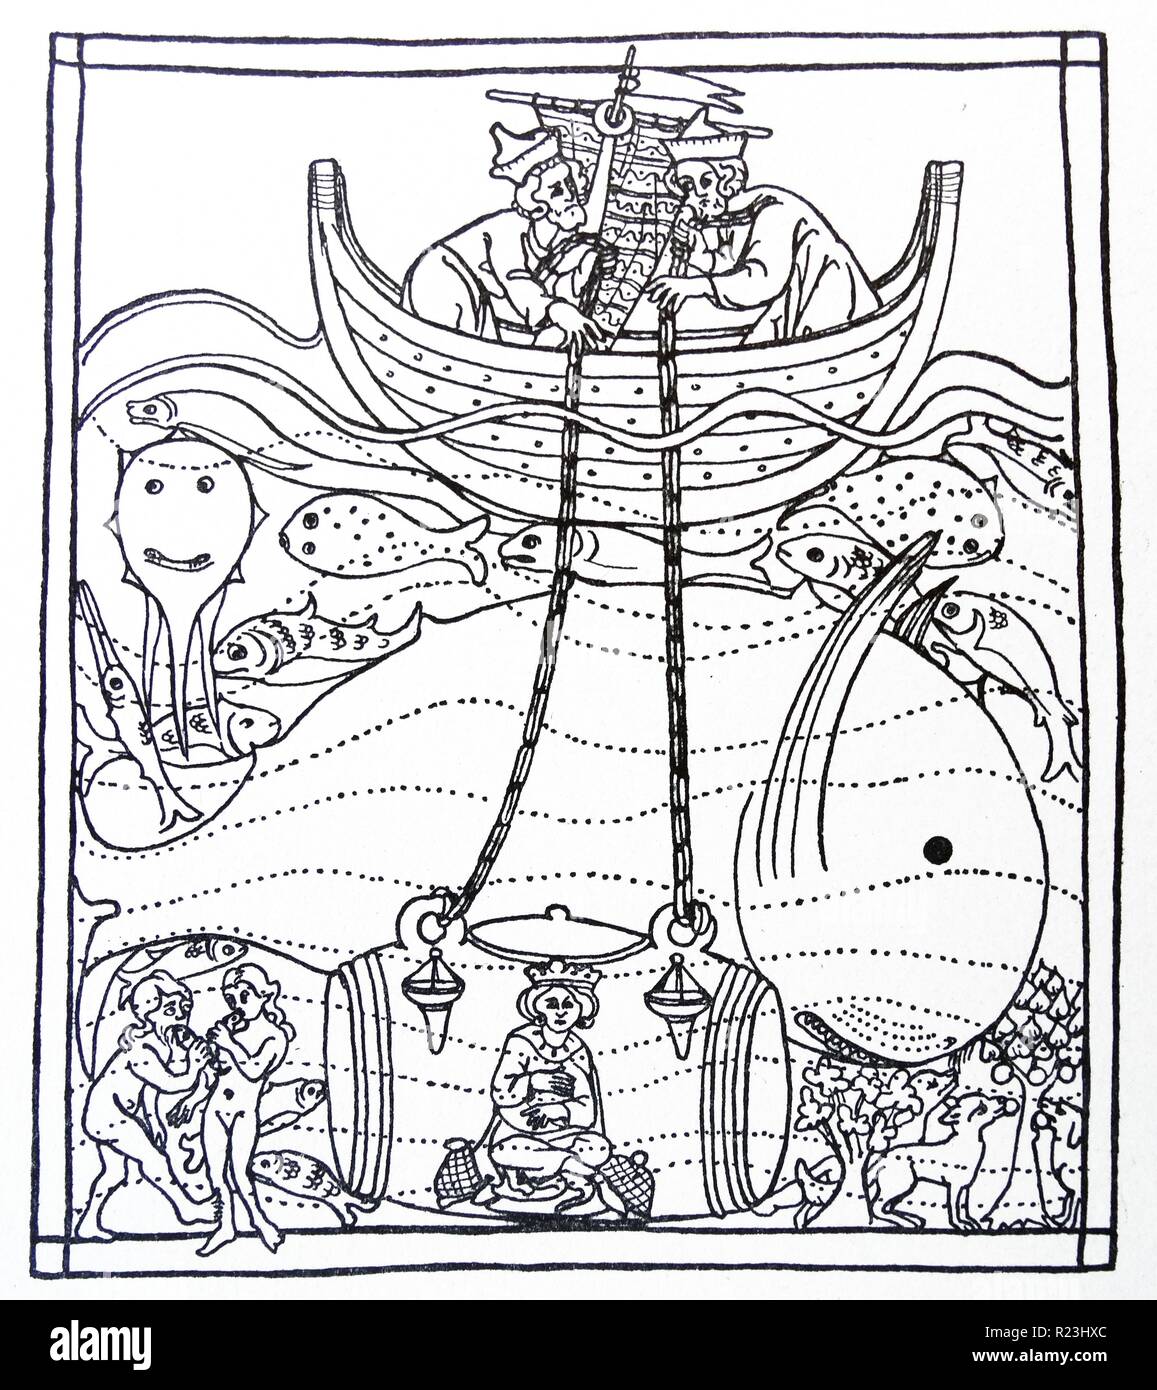 Linea medievale disegno di Alessandro il Grande discesa verso il fondo del mare in un cilindro di vetro per lo studio dei pesci. Datato xii secolo Foto Stock